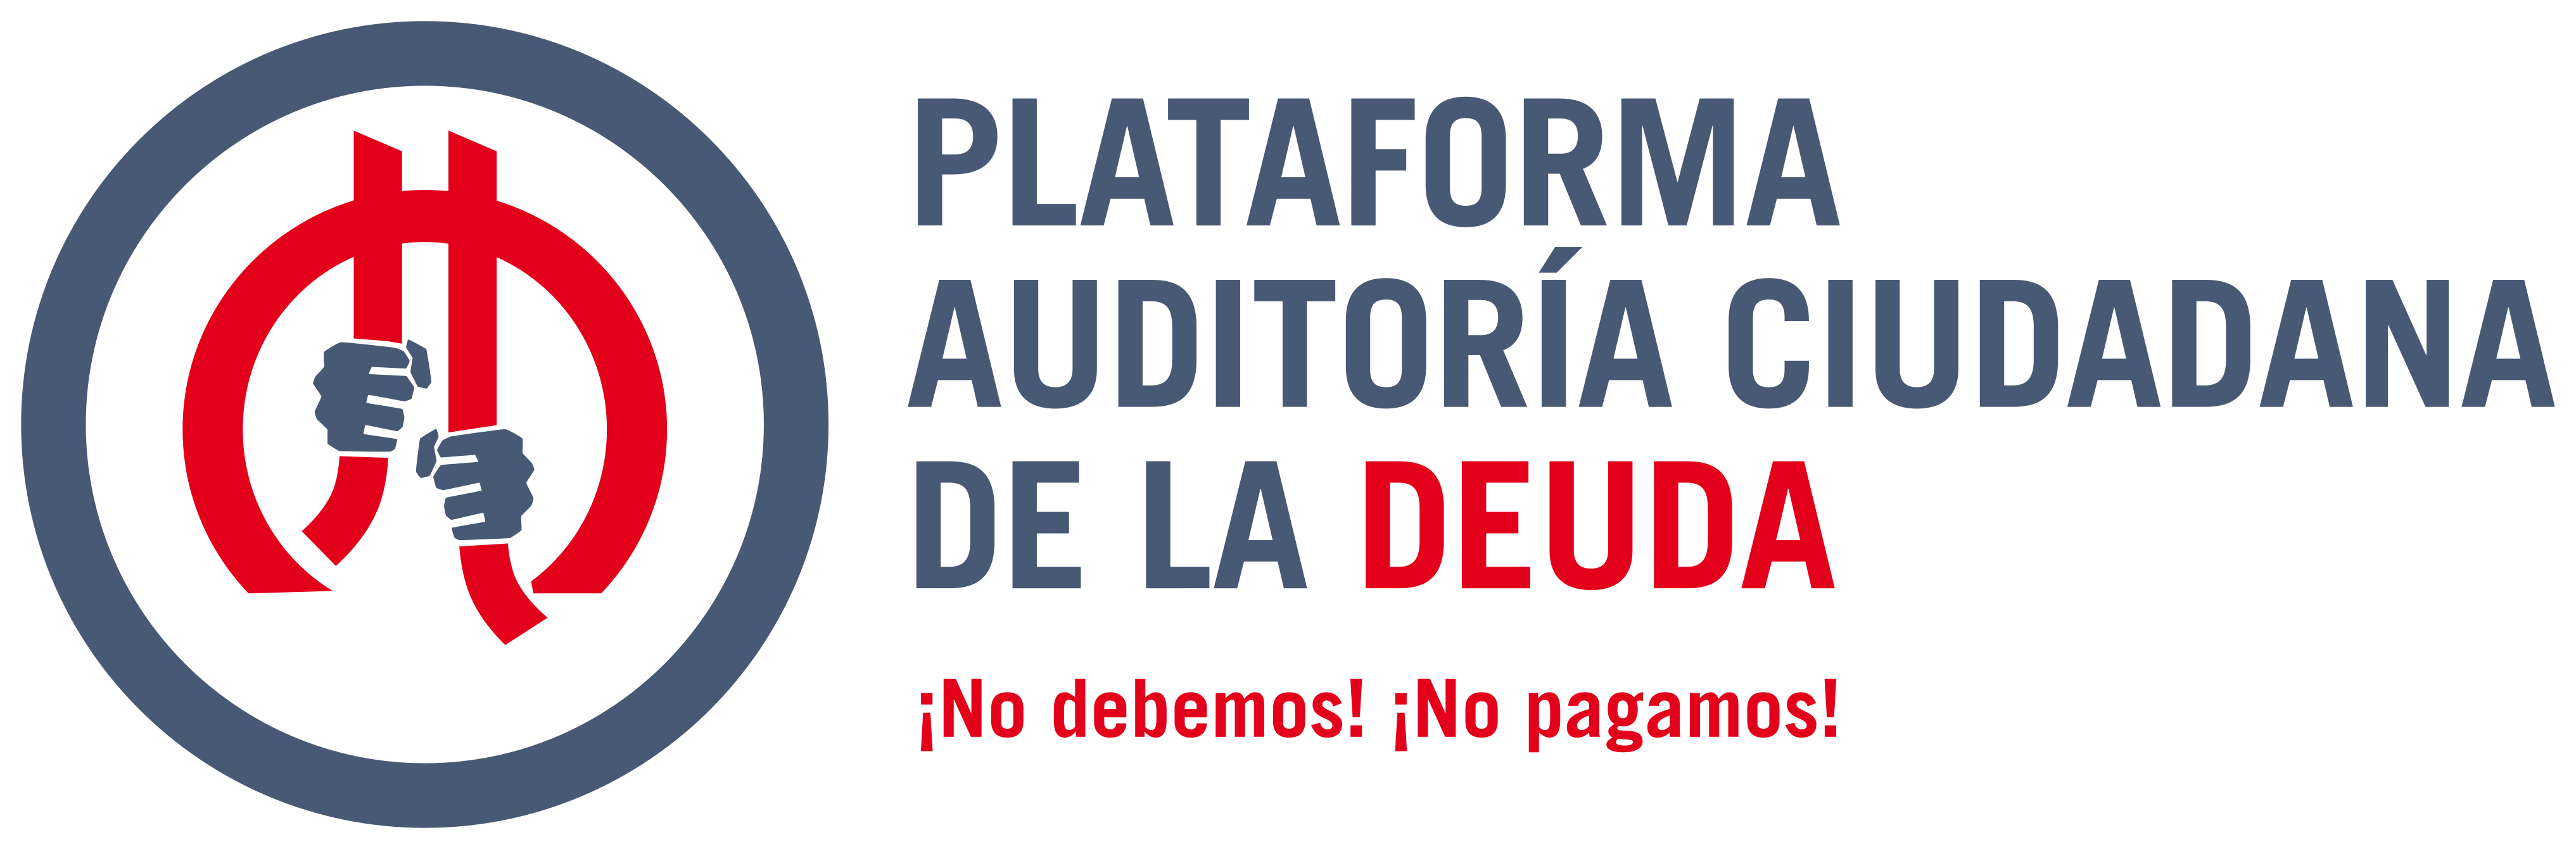 Plataforma Auditoría Ciudadana de la Deuda